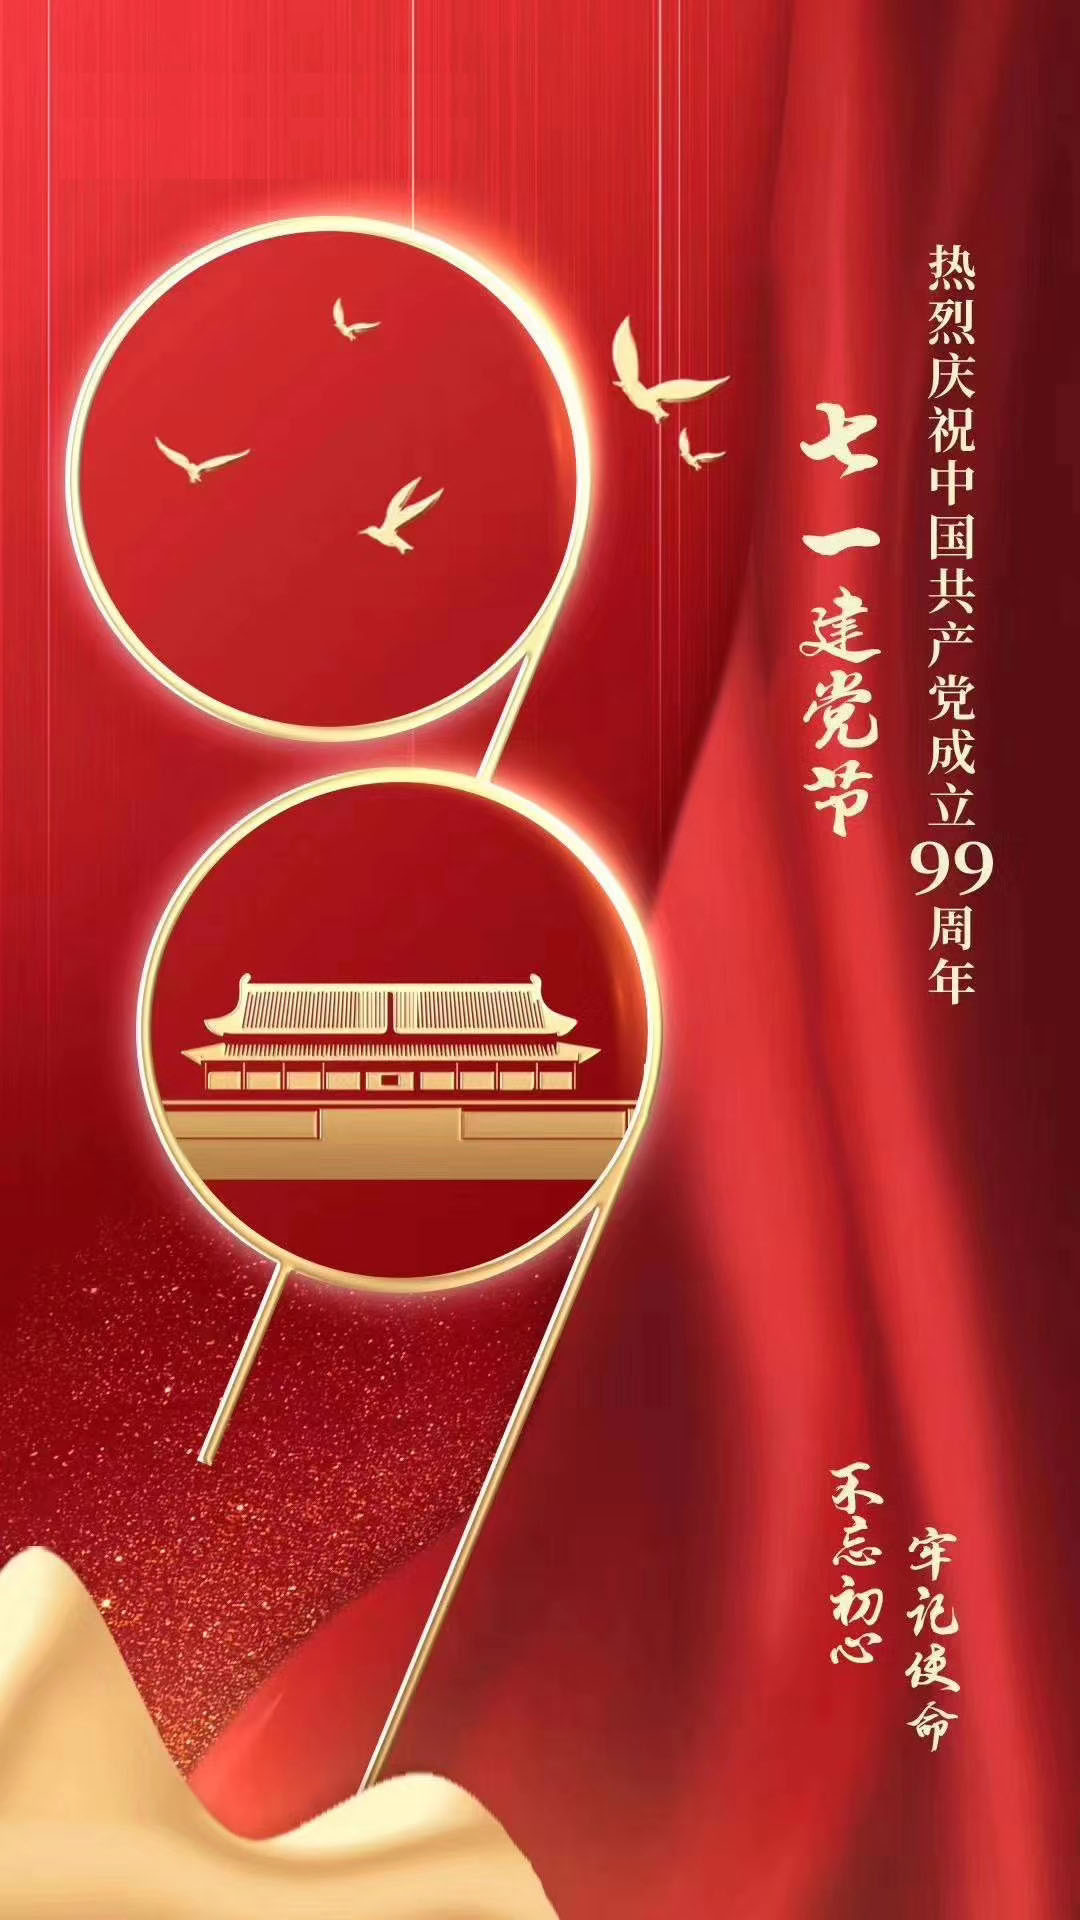 熱烈慶祝中國共產黨成立99周年